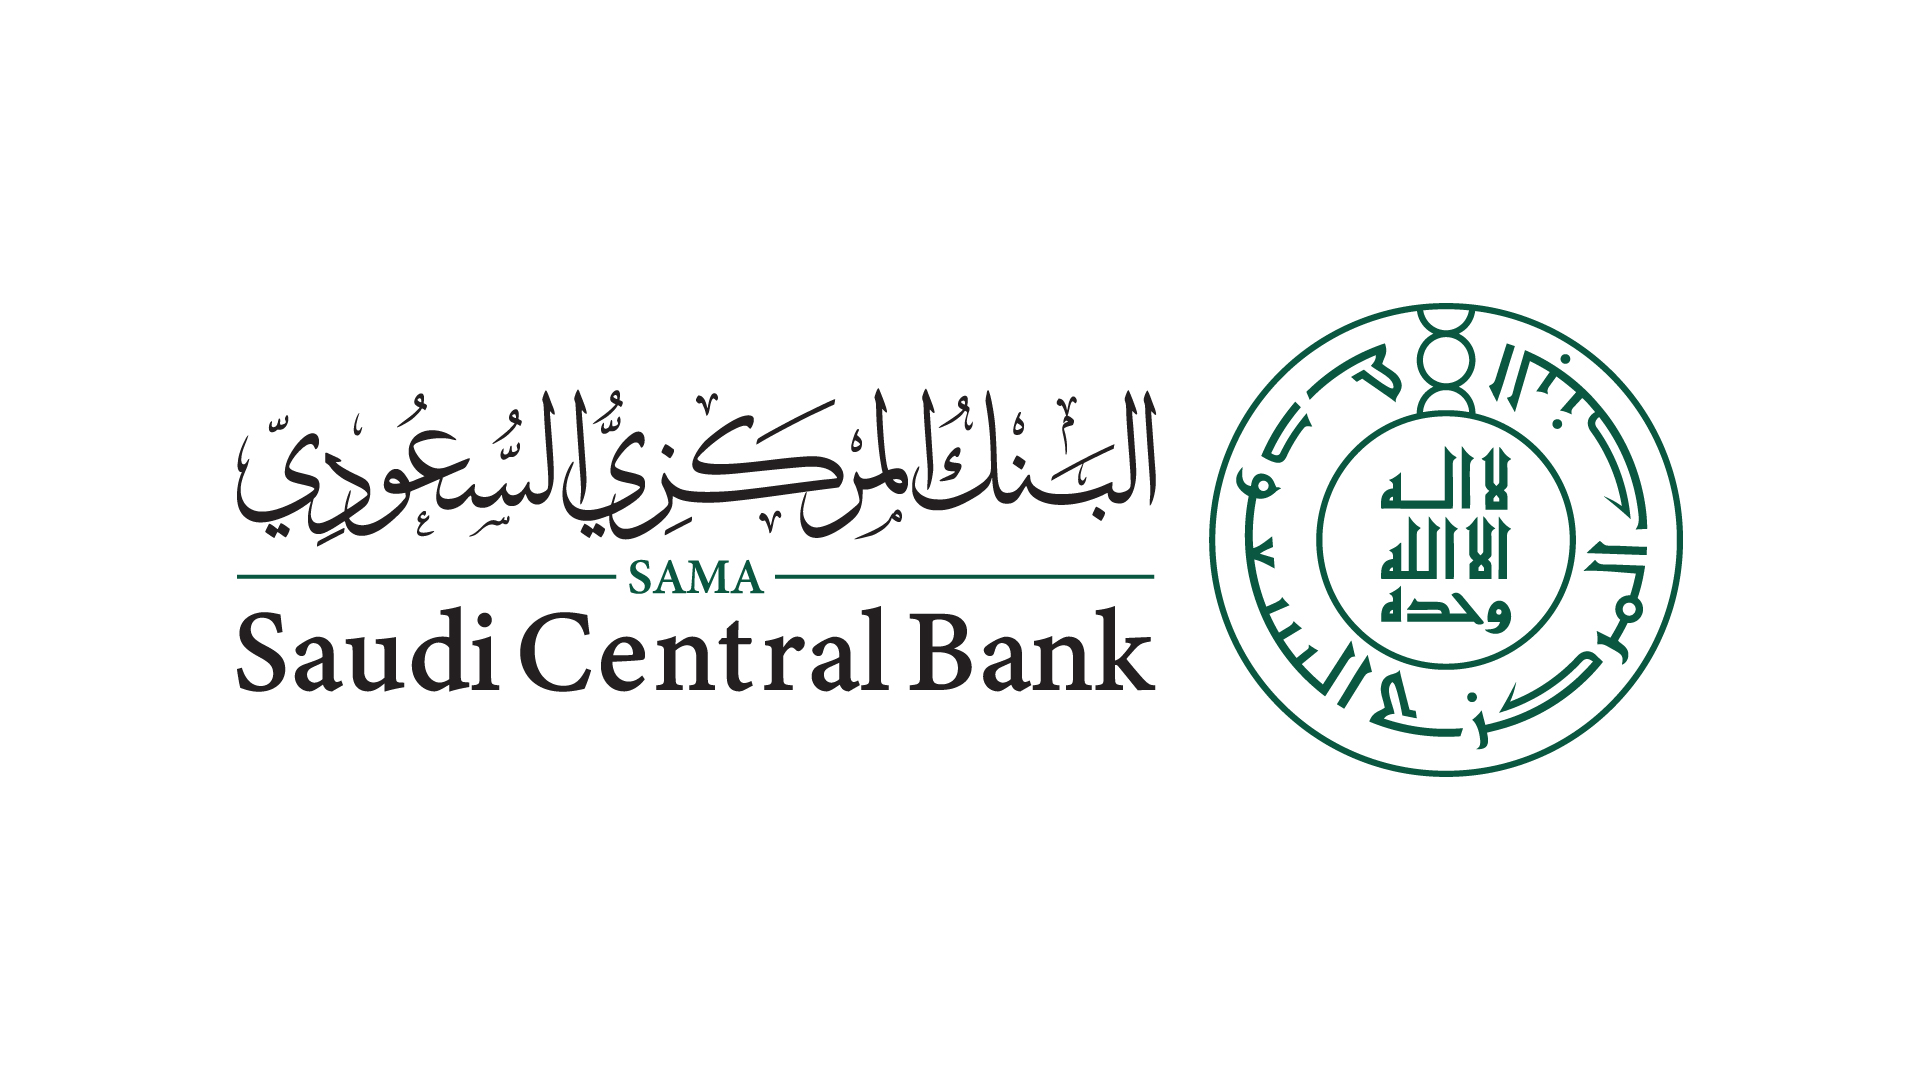 Saudi Central Bank Logo (SAMA)